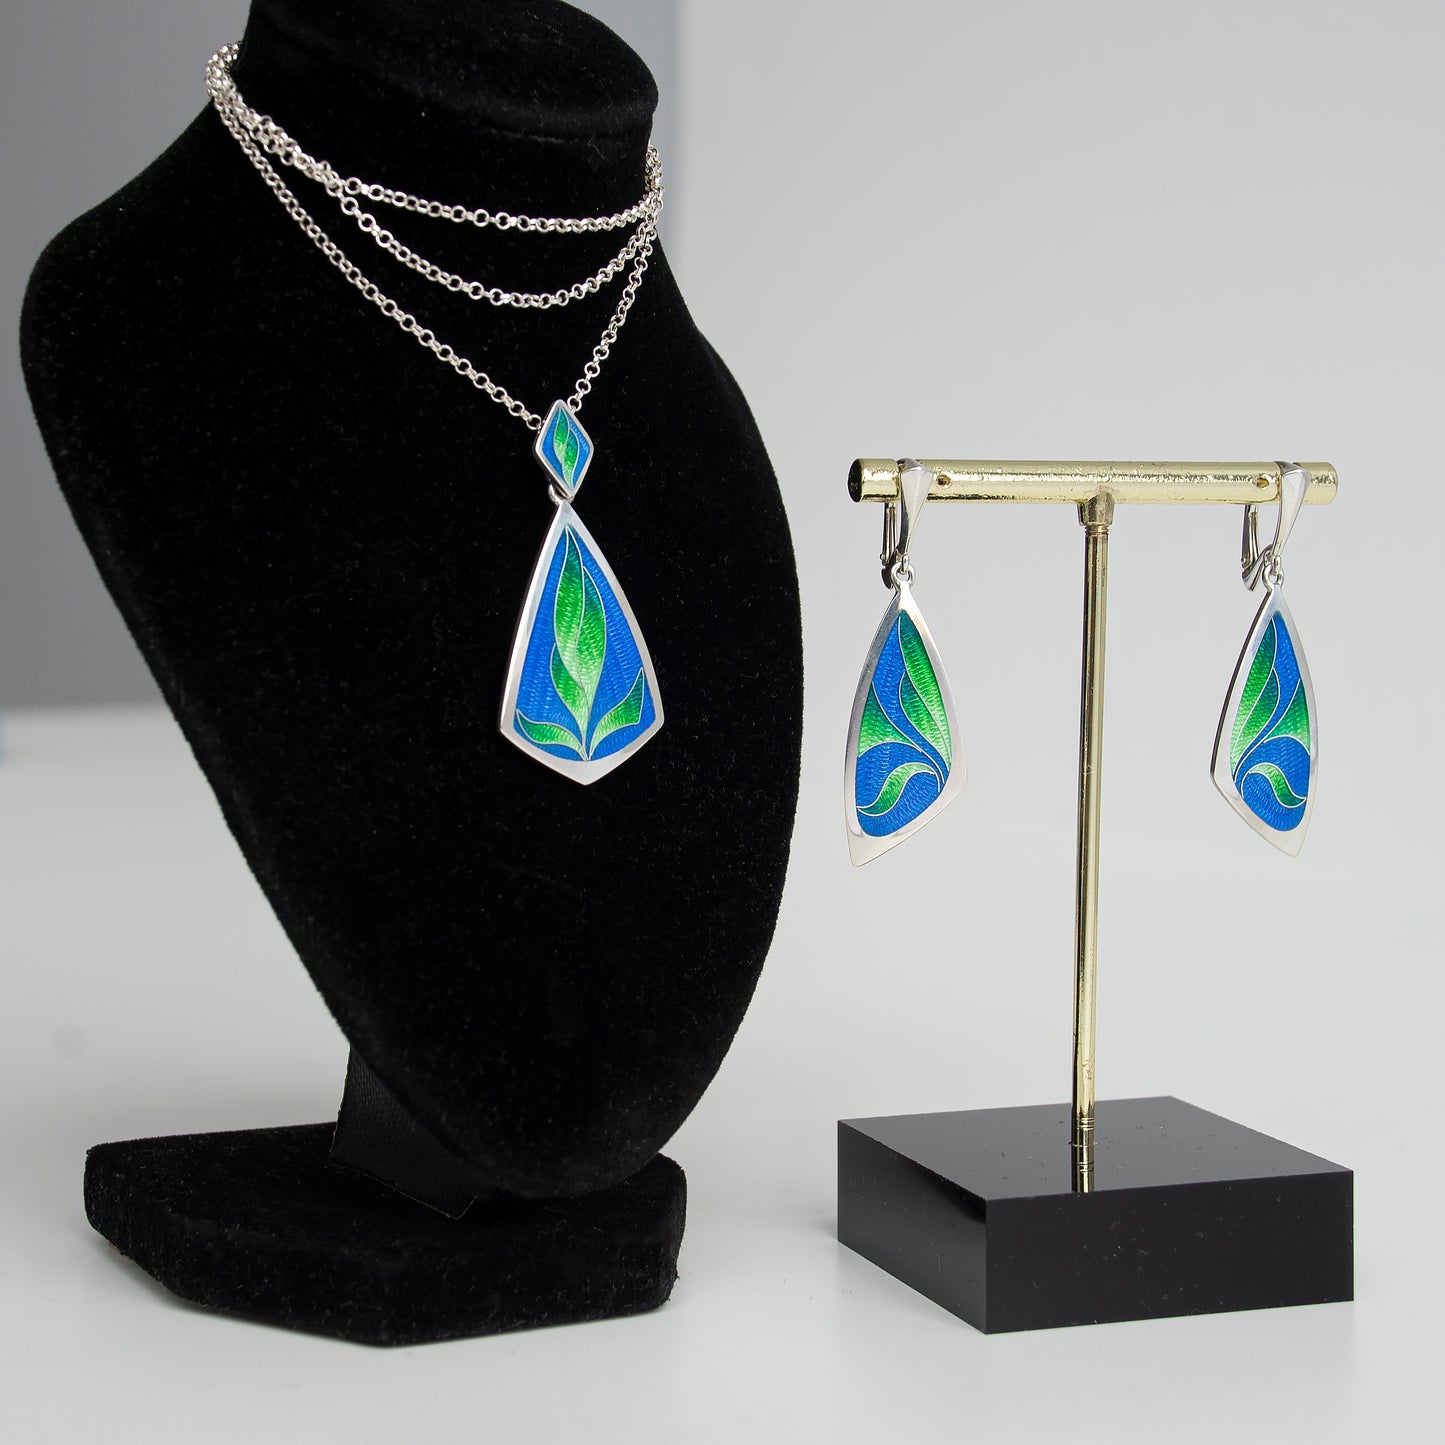 Greenery Cloisonné Enamel Jewelry Set. Cloisonné Pendant & Cloisonné Earrings